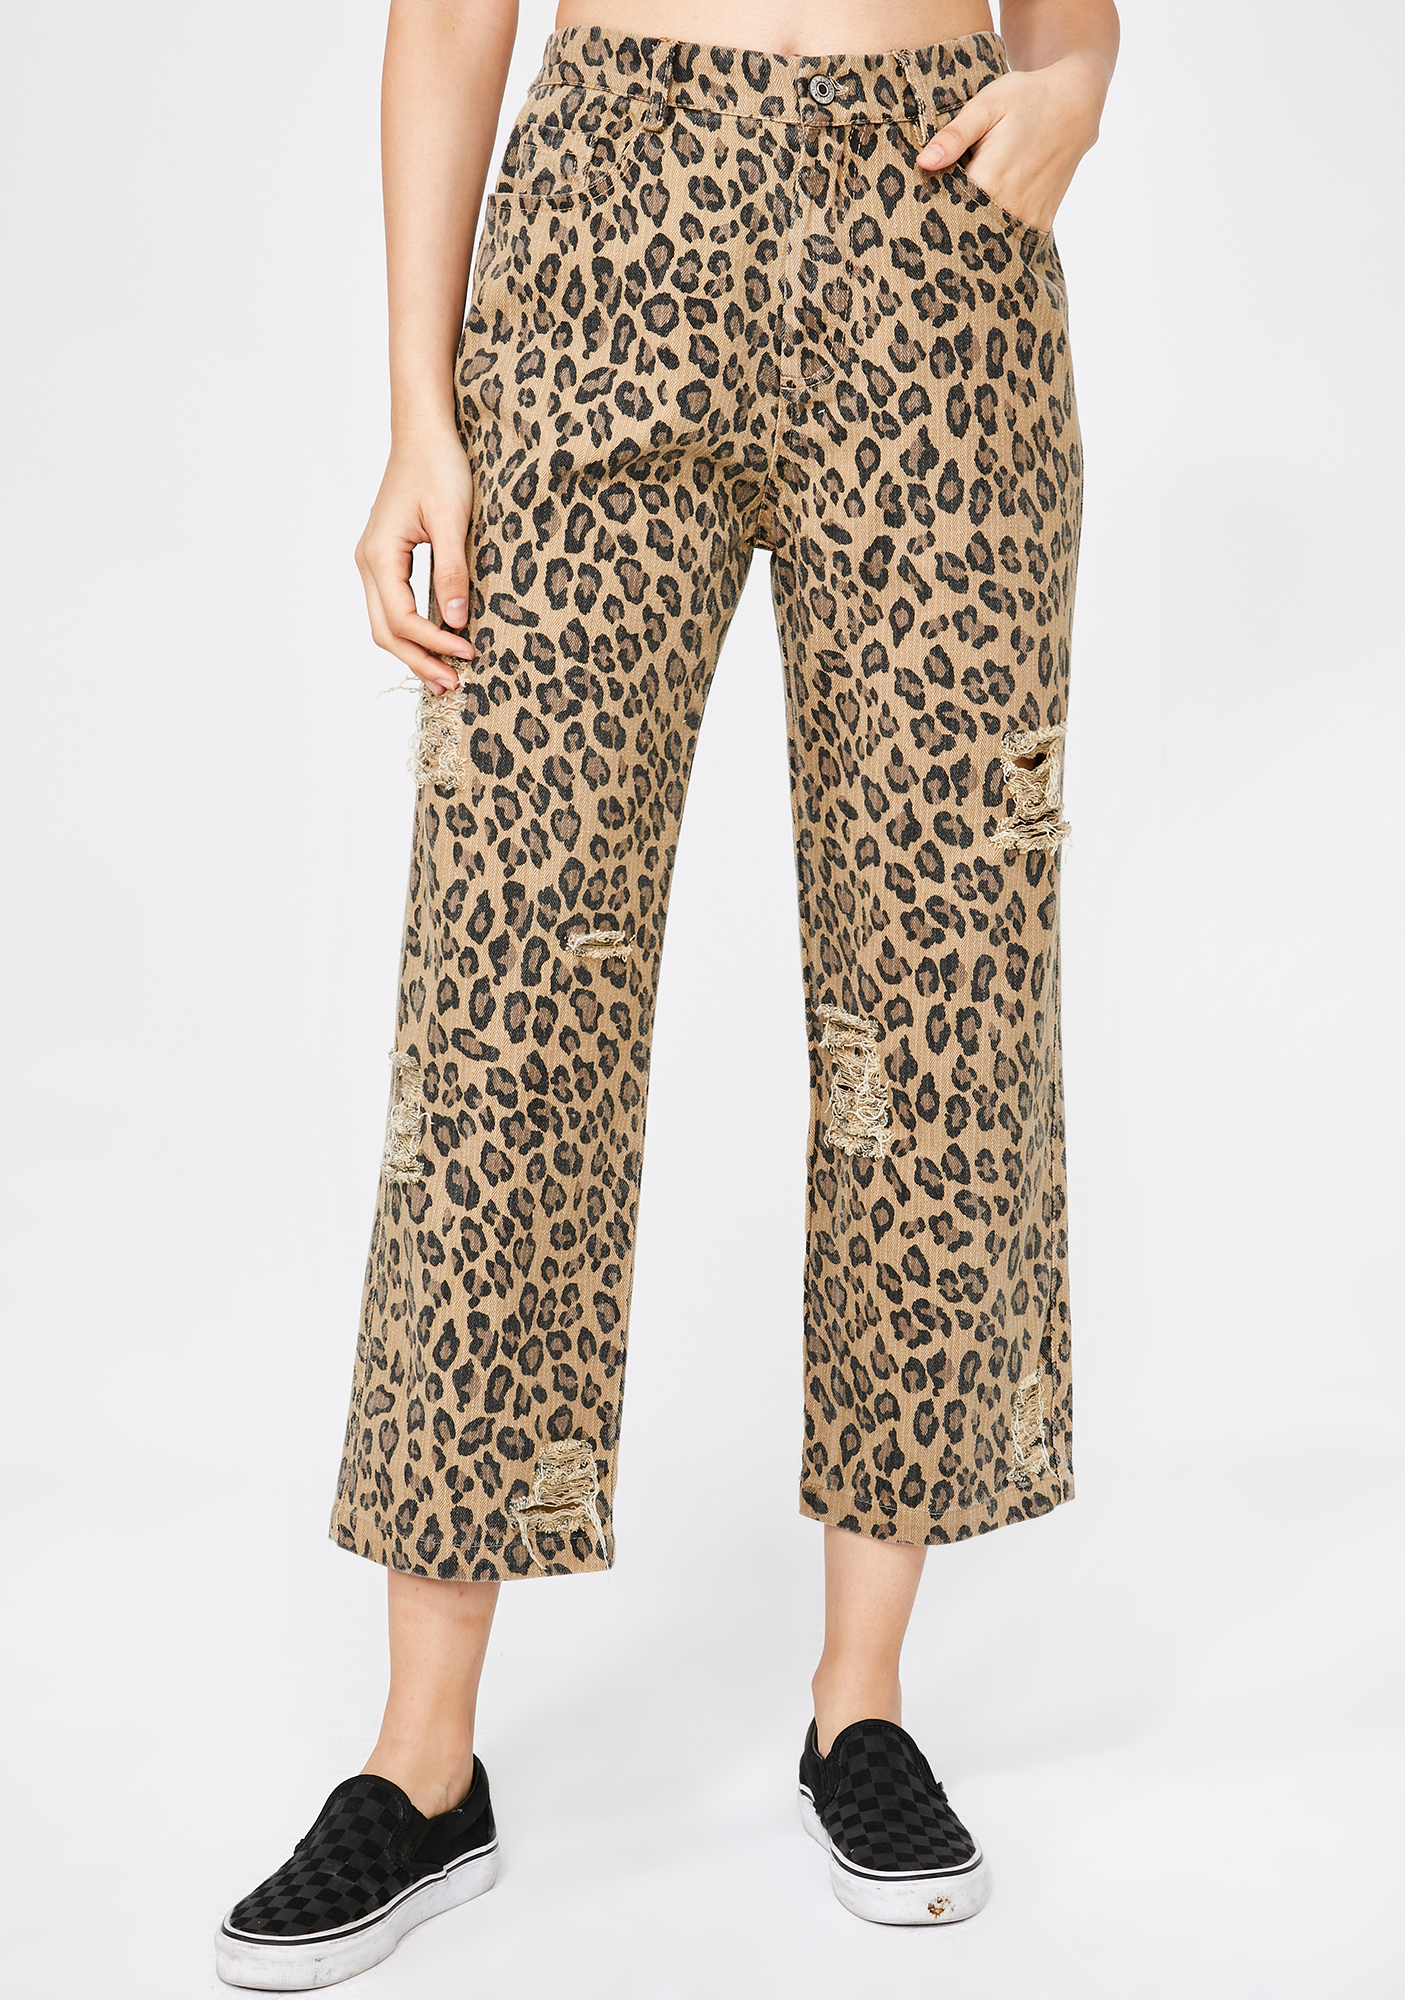 Molly Bracken Leopard Trousers | Dolls Kill